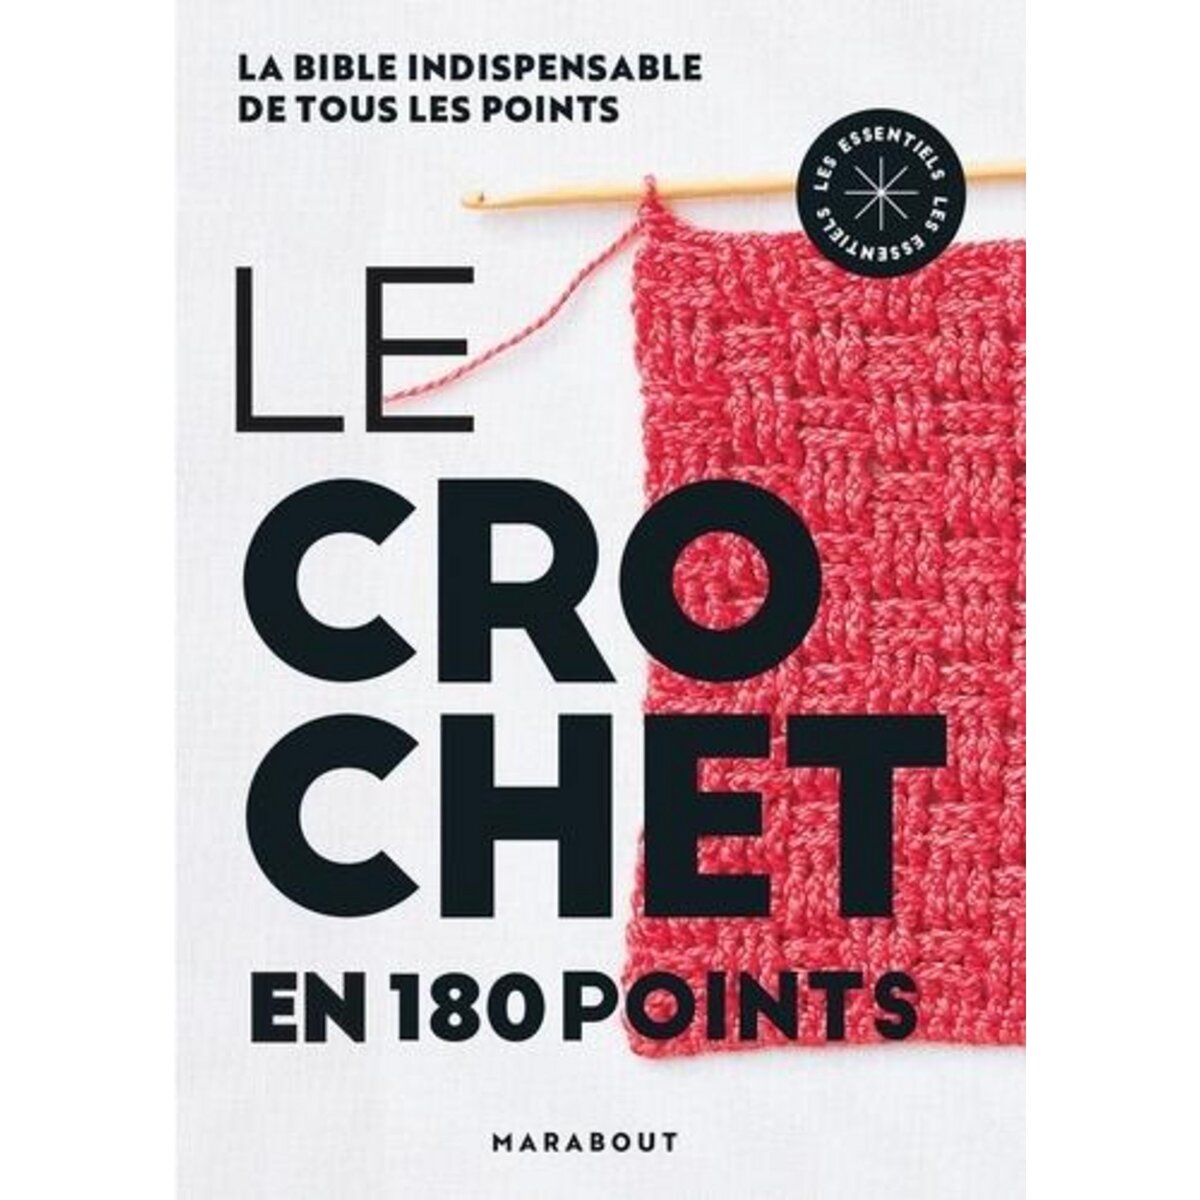  LE CROCHET EN 180 POINTS, Marabout